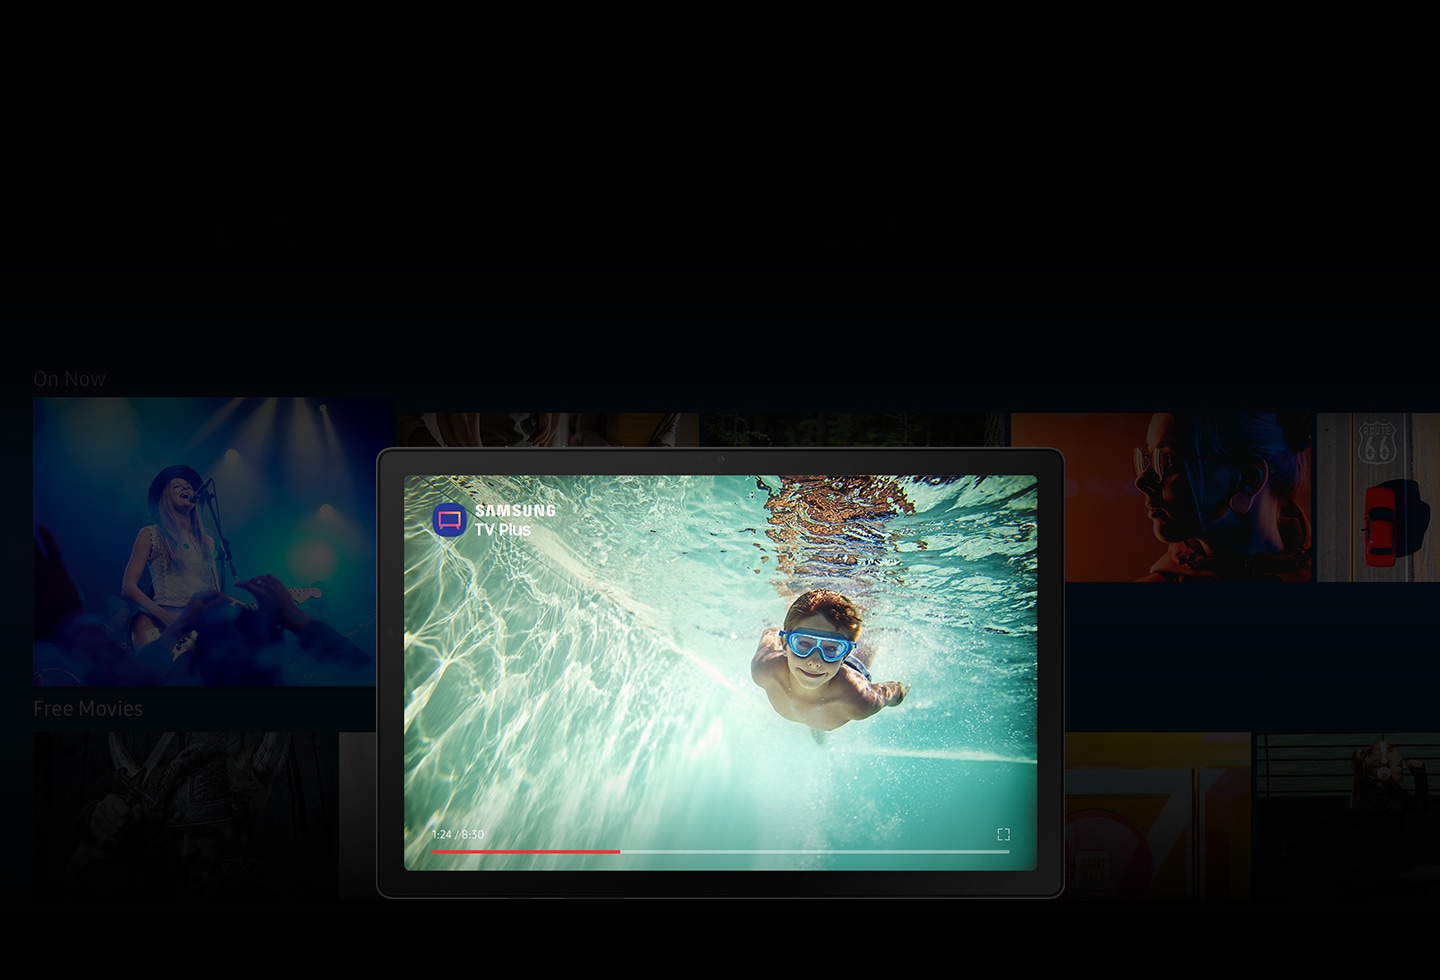 Приложение Samsung TV Plus открыто на Galaxy Tab A8. На фоне многочисленных размытых изображений из телепередач и фильмов на экране изображен мальчик, плывущий под водой.